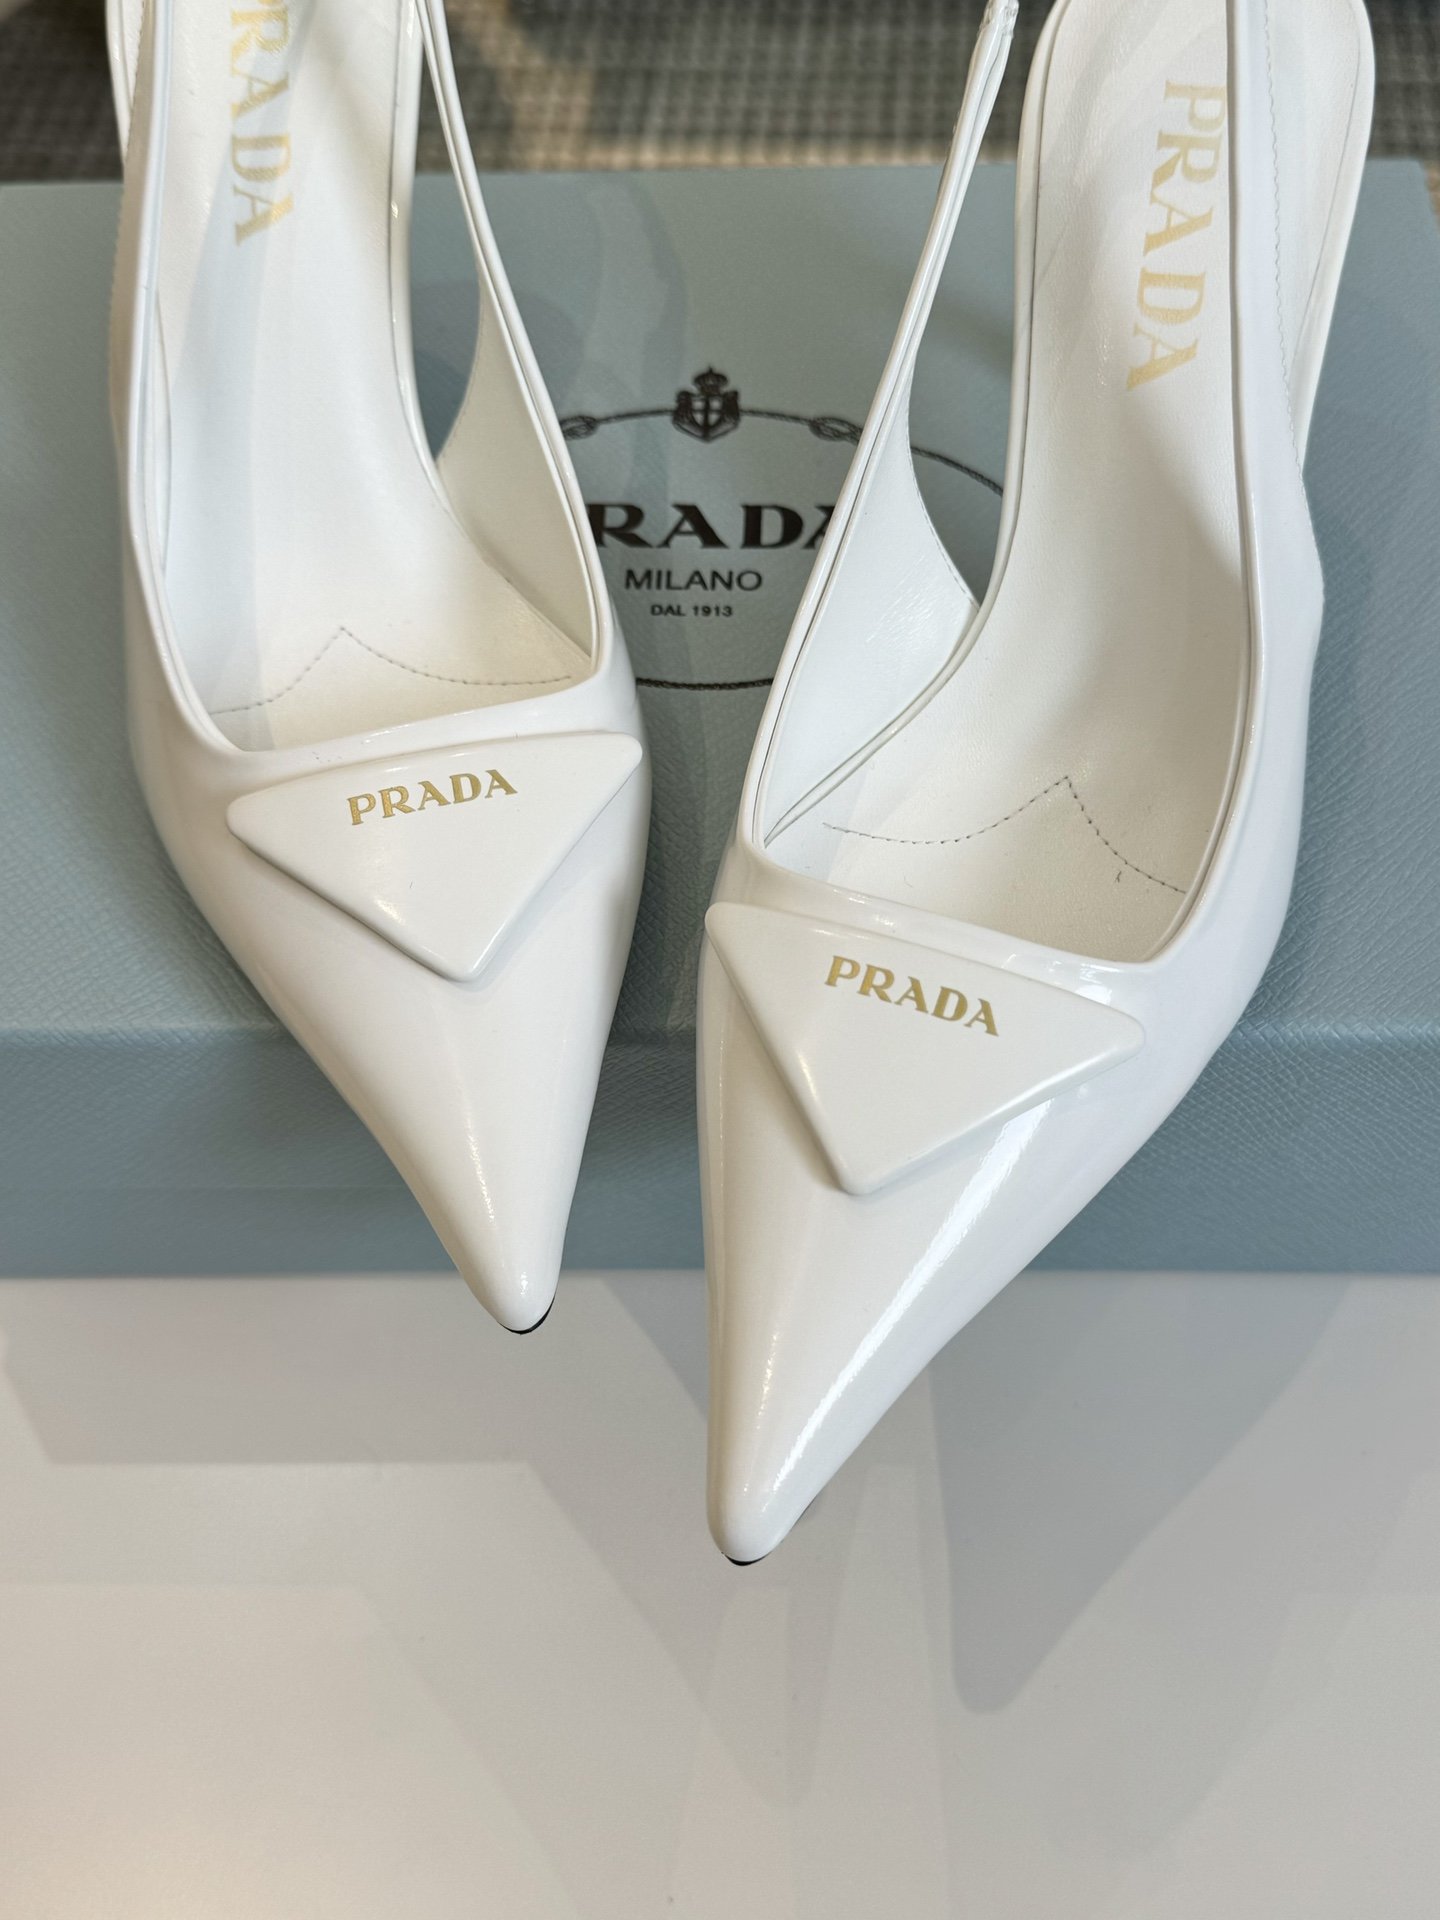 PRADA/普拉达经典春夏三角标凉鞋单鞋系列简单的设计大概就是它最让人喜欢的点不是烂大街的那种很有自己的